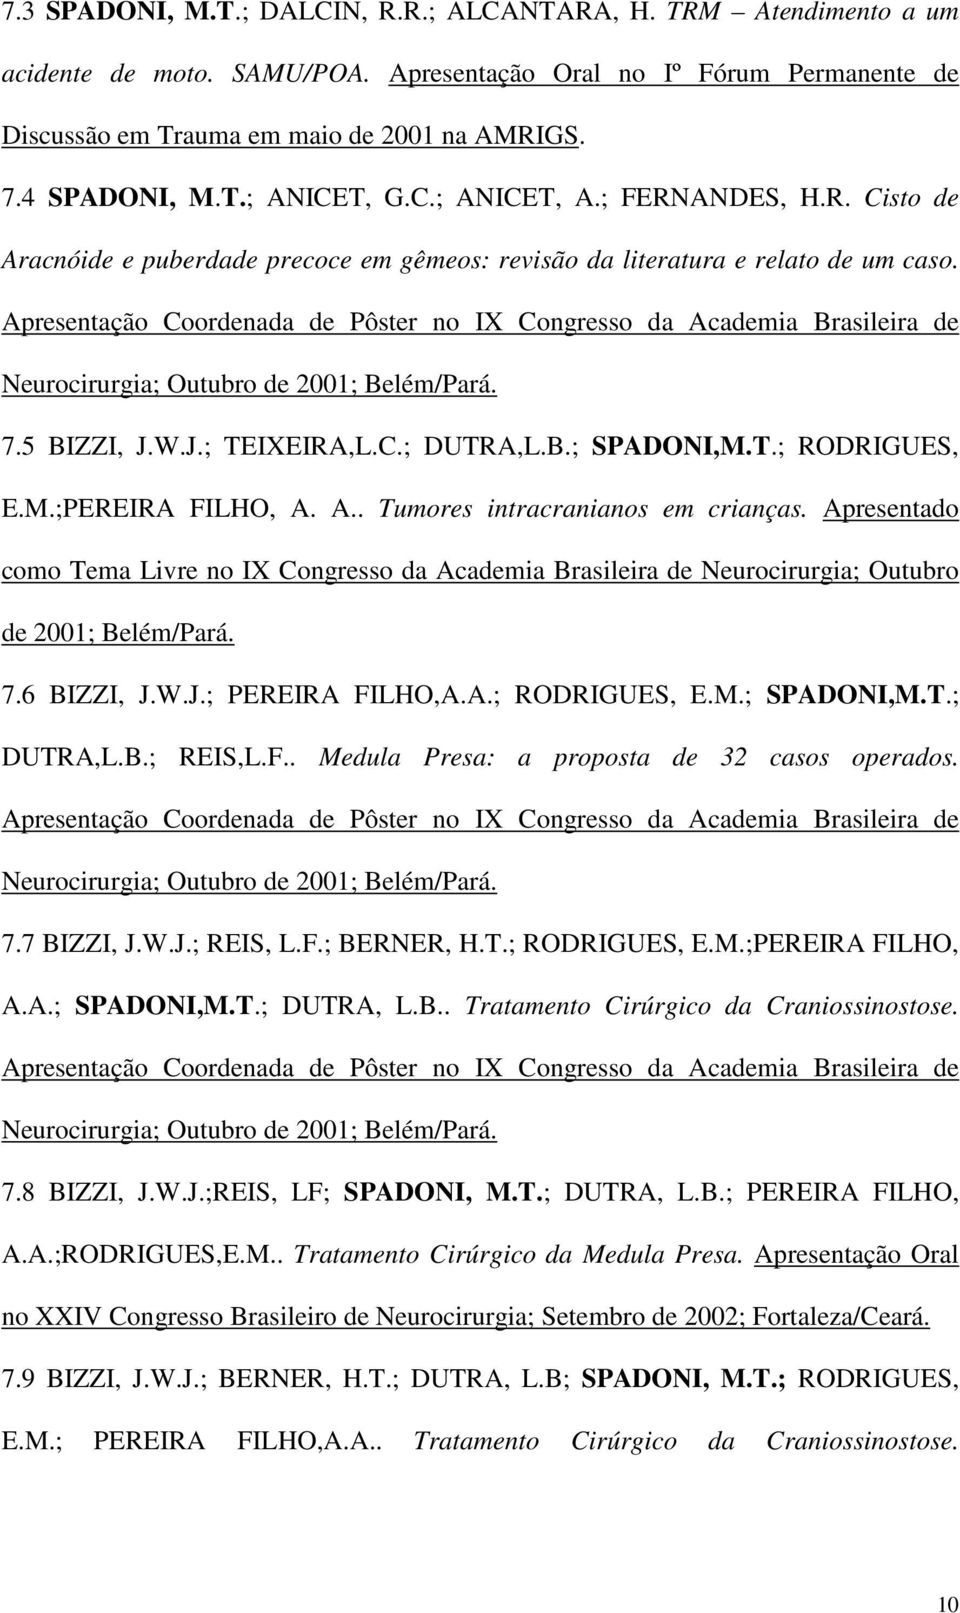 Apresentação Coordenada de Pôster no IX Congresso da Academia Brasileira de Neurocirurgia; Outubro de 2001; Belém/Pará. 7.5 BIZZI, J.W.J.; TEIXEIRA,L.C.; DUTRA,L.B.; SPADONI,M.T.; RODRIGUES, E.M.;PEREIRA FILHO, A.